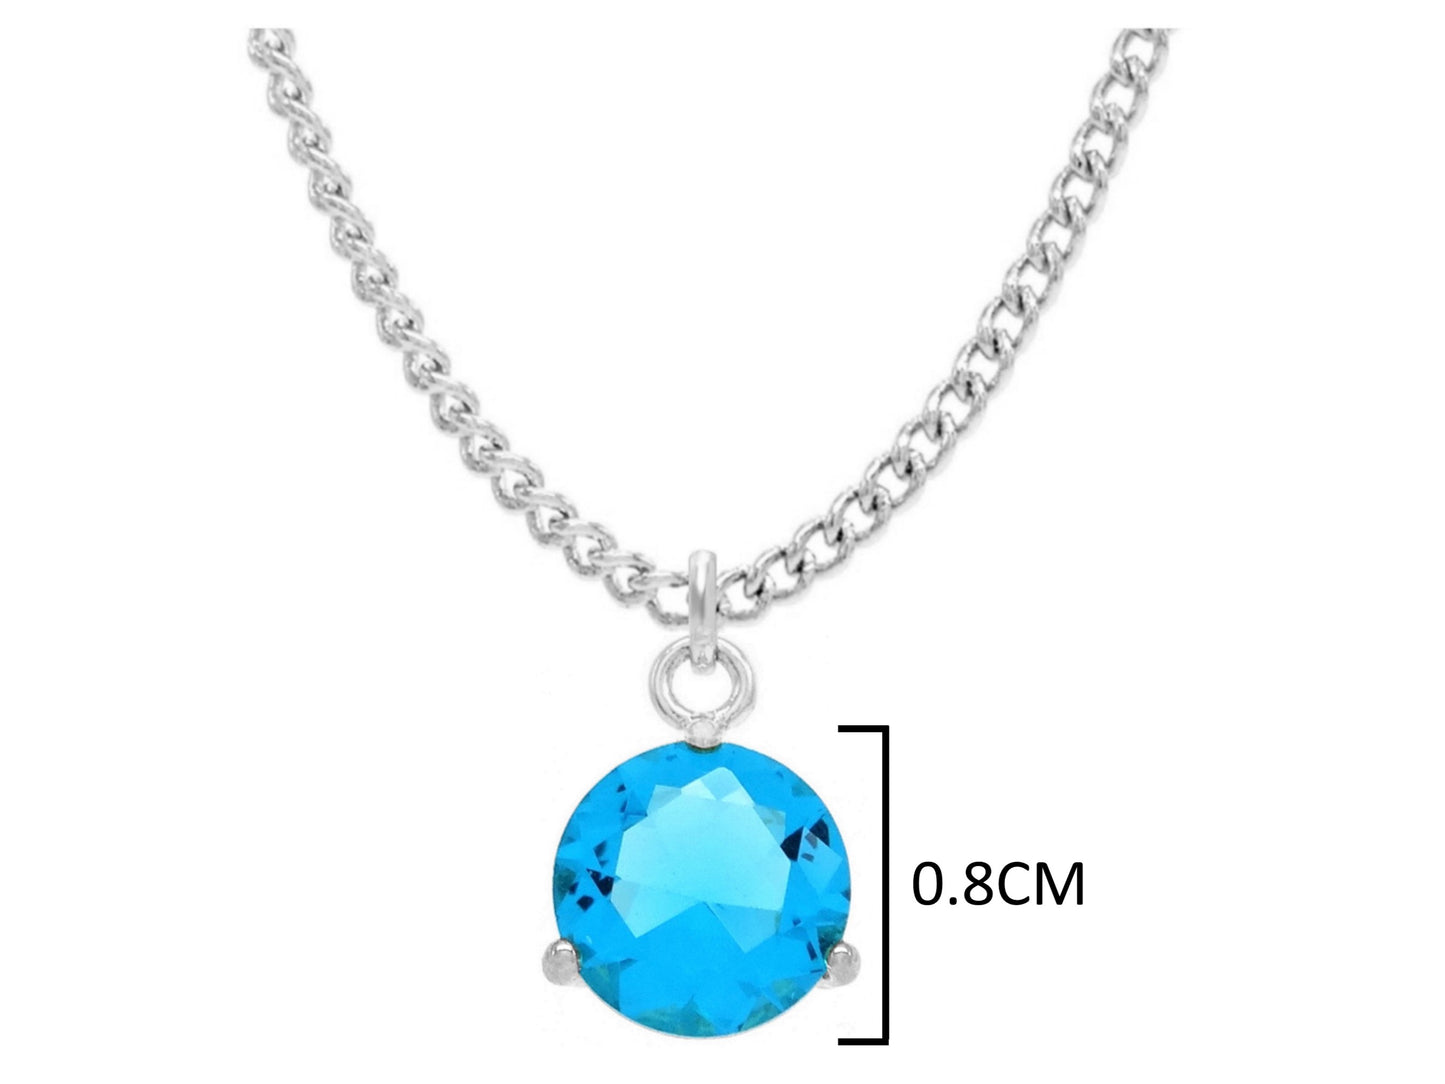 Blue gem white gold necklace MEASUREMENT